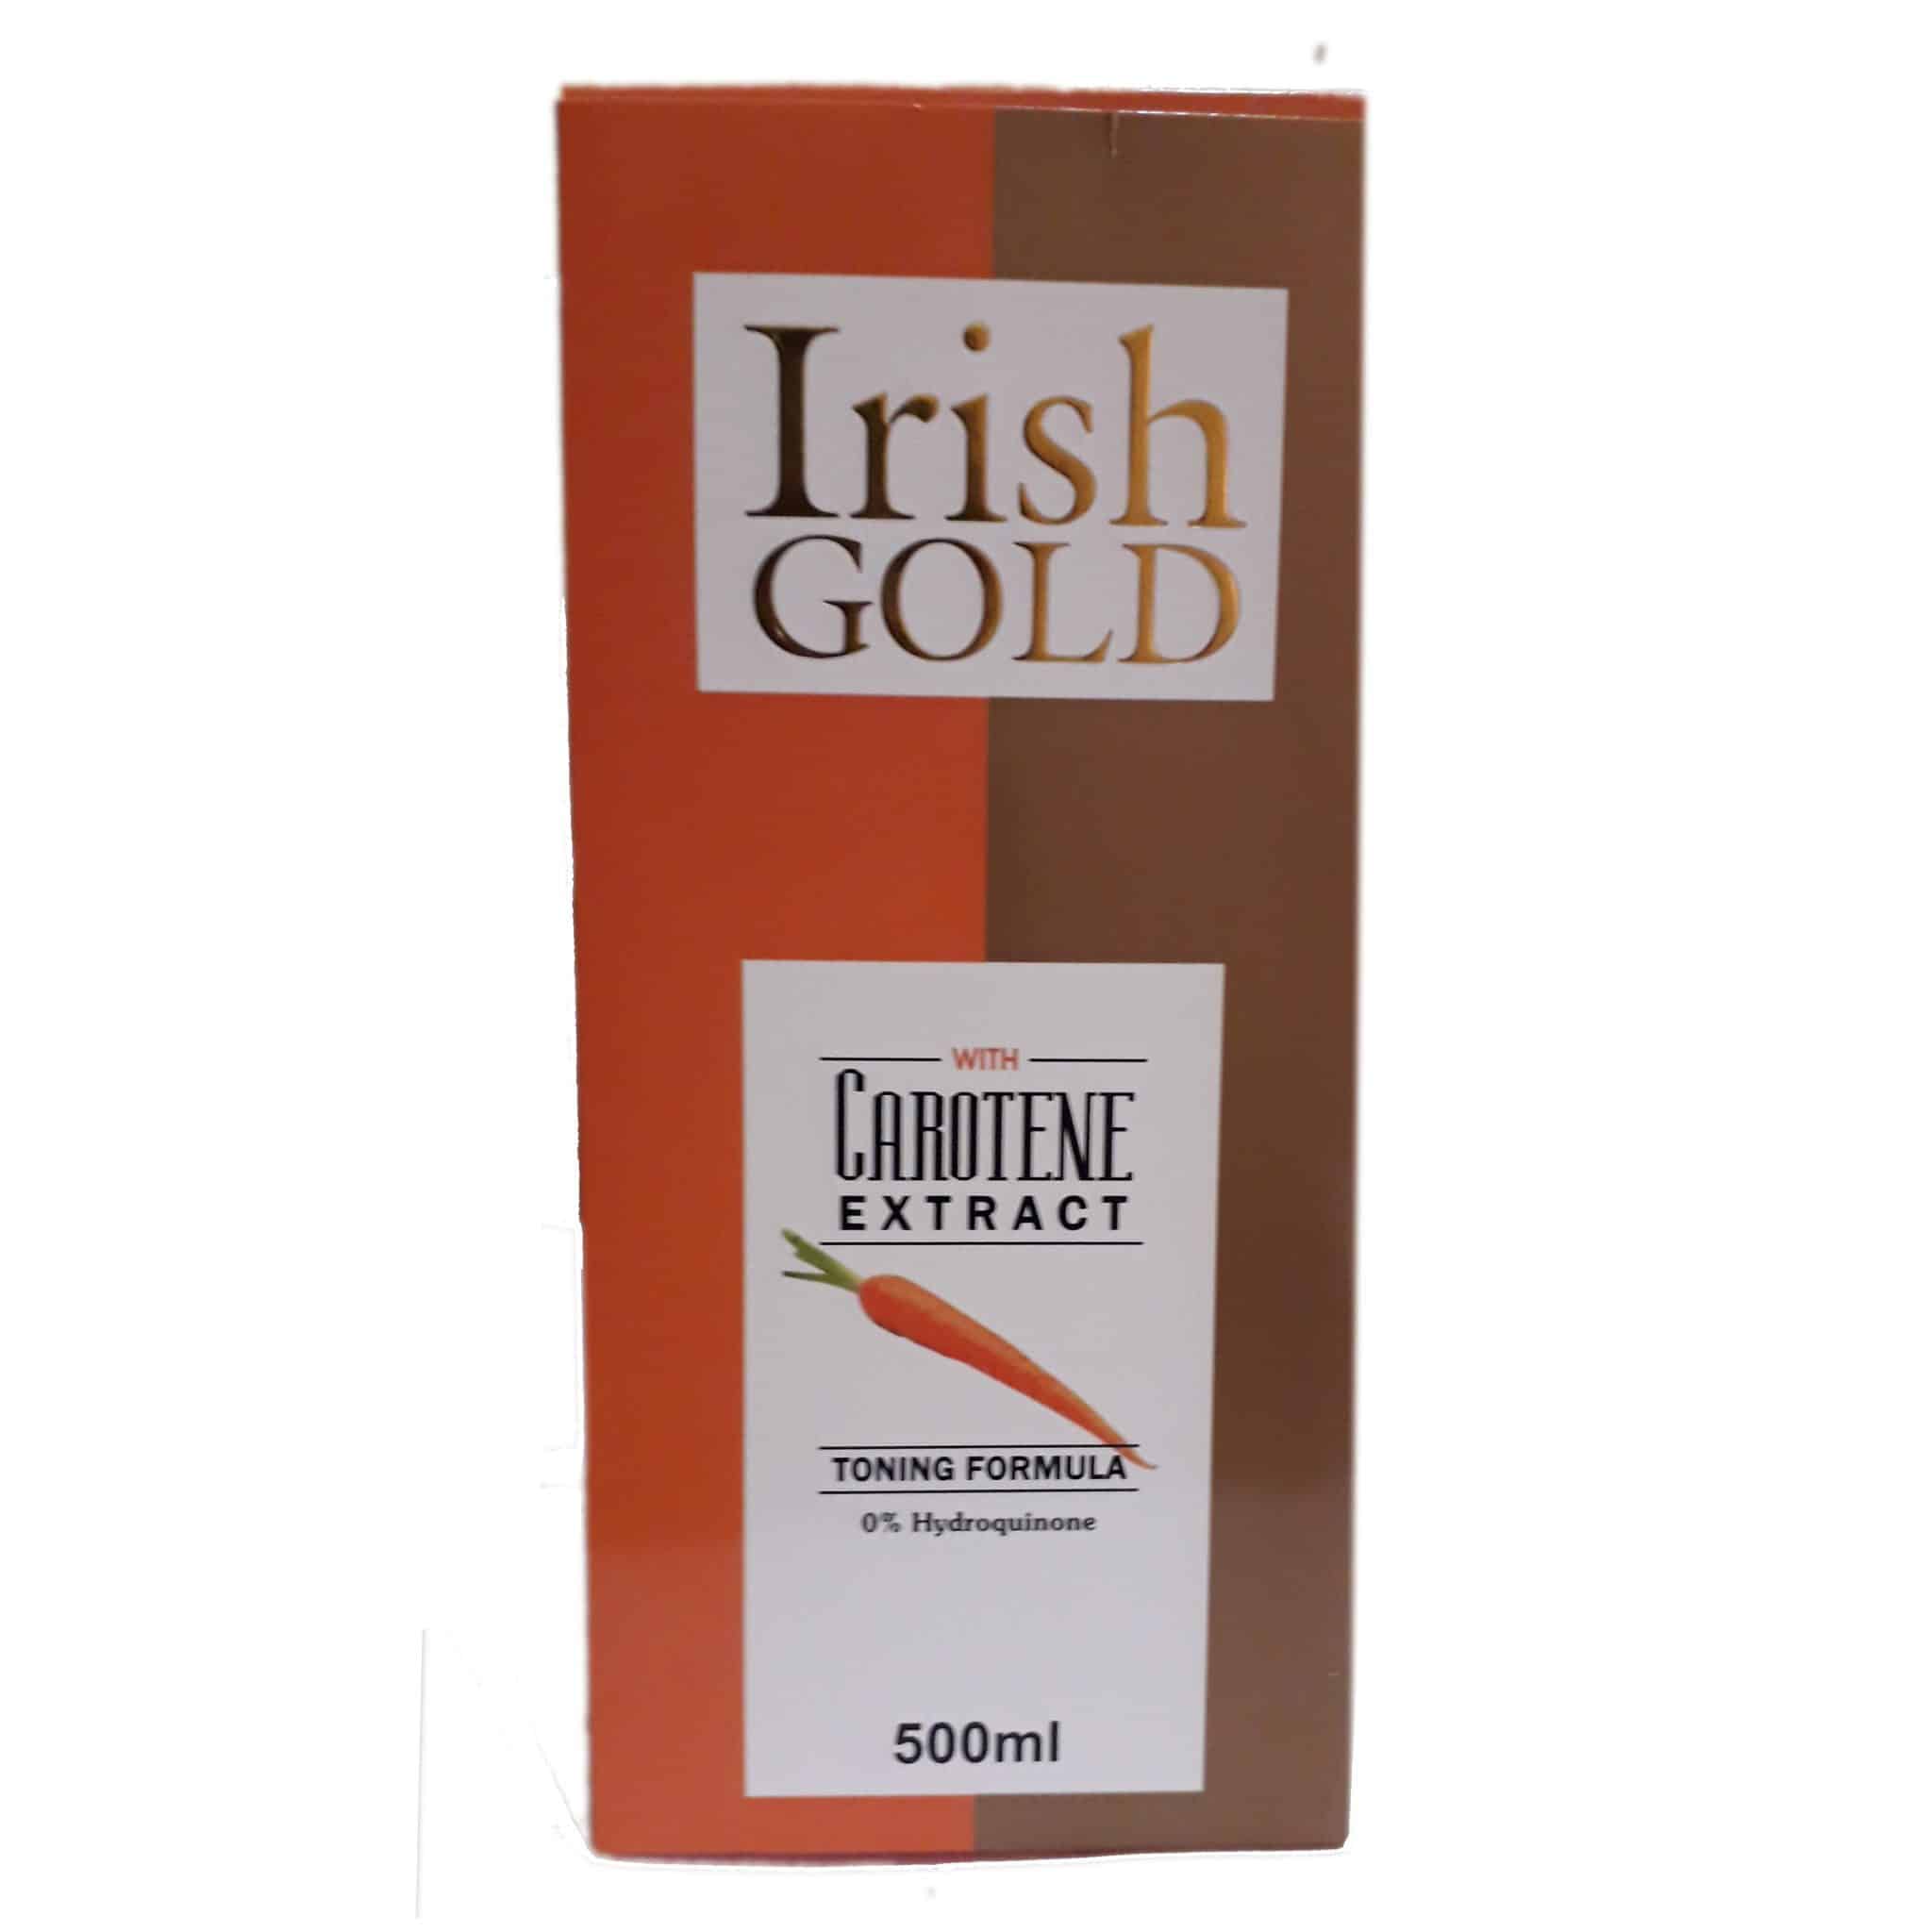 IRISH GOLD CREAM